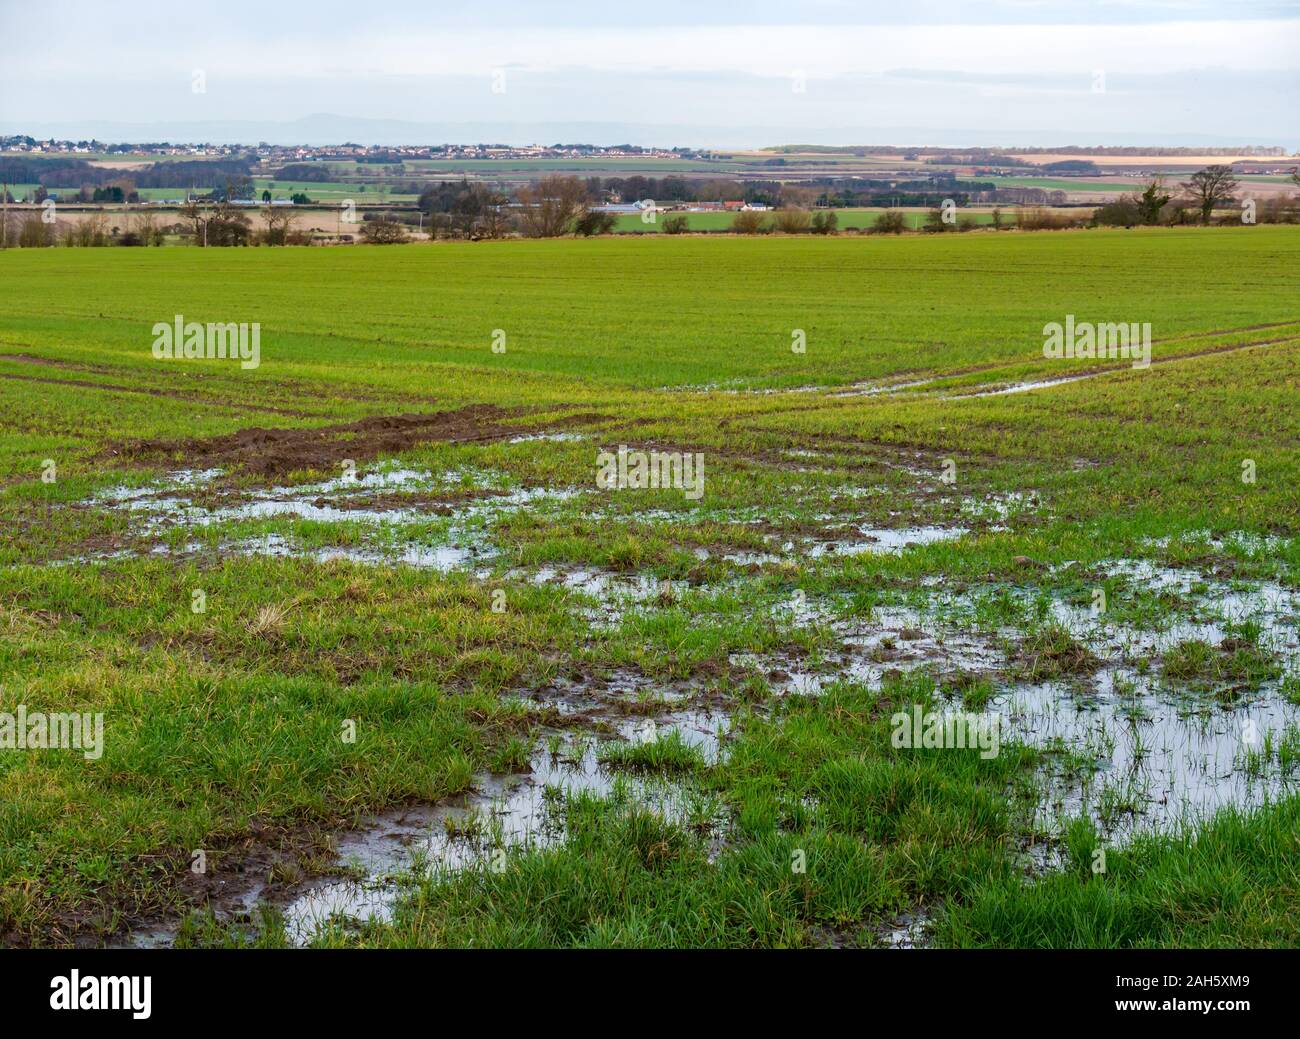 Saturo di acqua allagata fangoso campo di coltivazione nel paesaggio agricolo, East Lothian, Scozia, Regno Unito Foto Stock